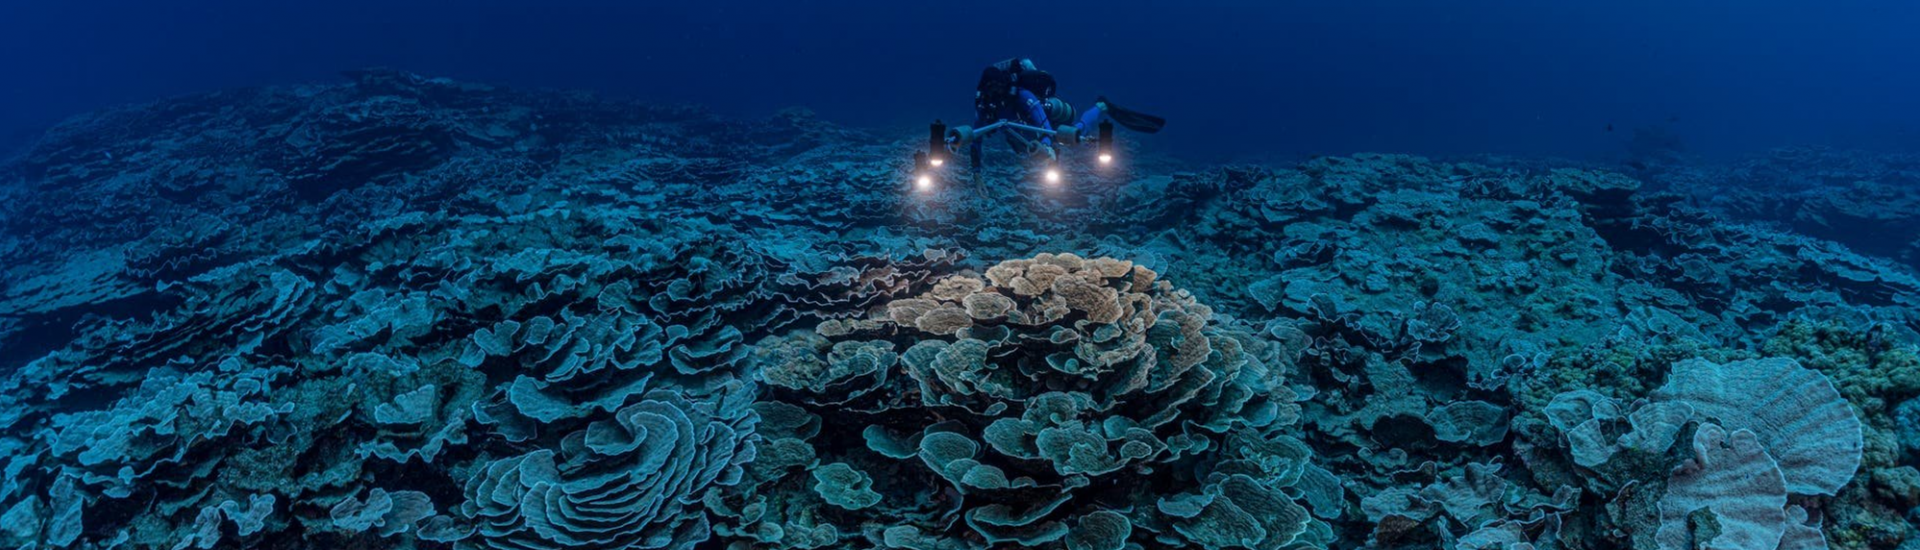 Een door Unesco gesteunde wetenschappelijke onderzoeksmissie heeft voor de kust van Tahiti een van de grootste koraalriffen ter wereld ontdekt. 